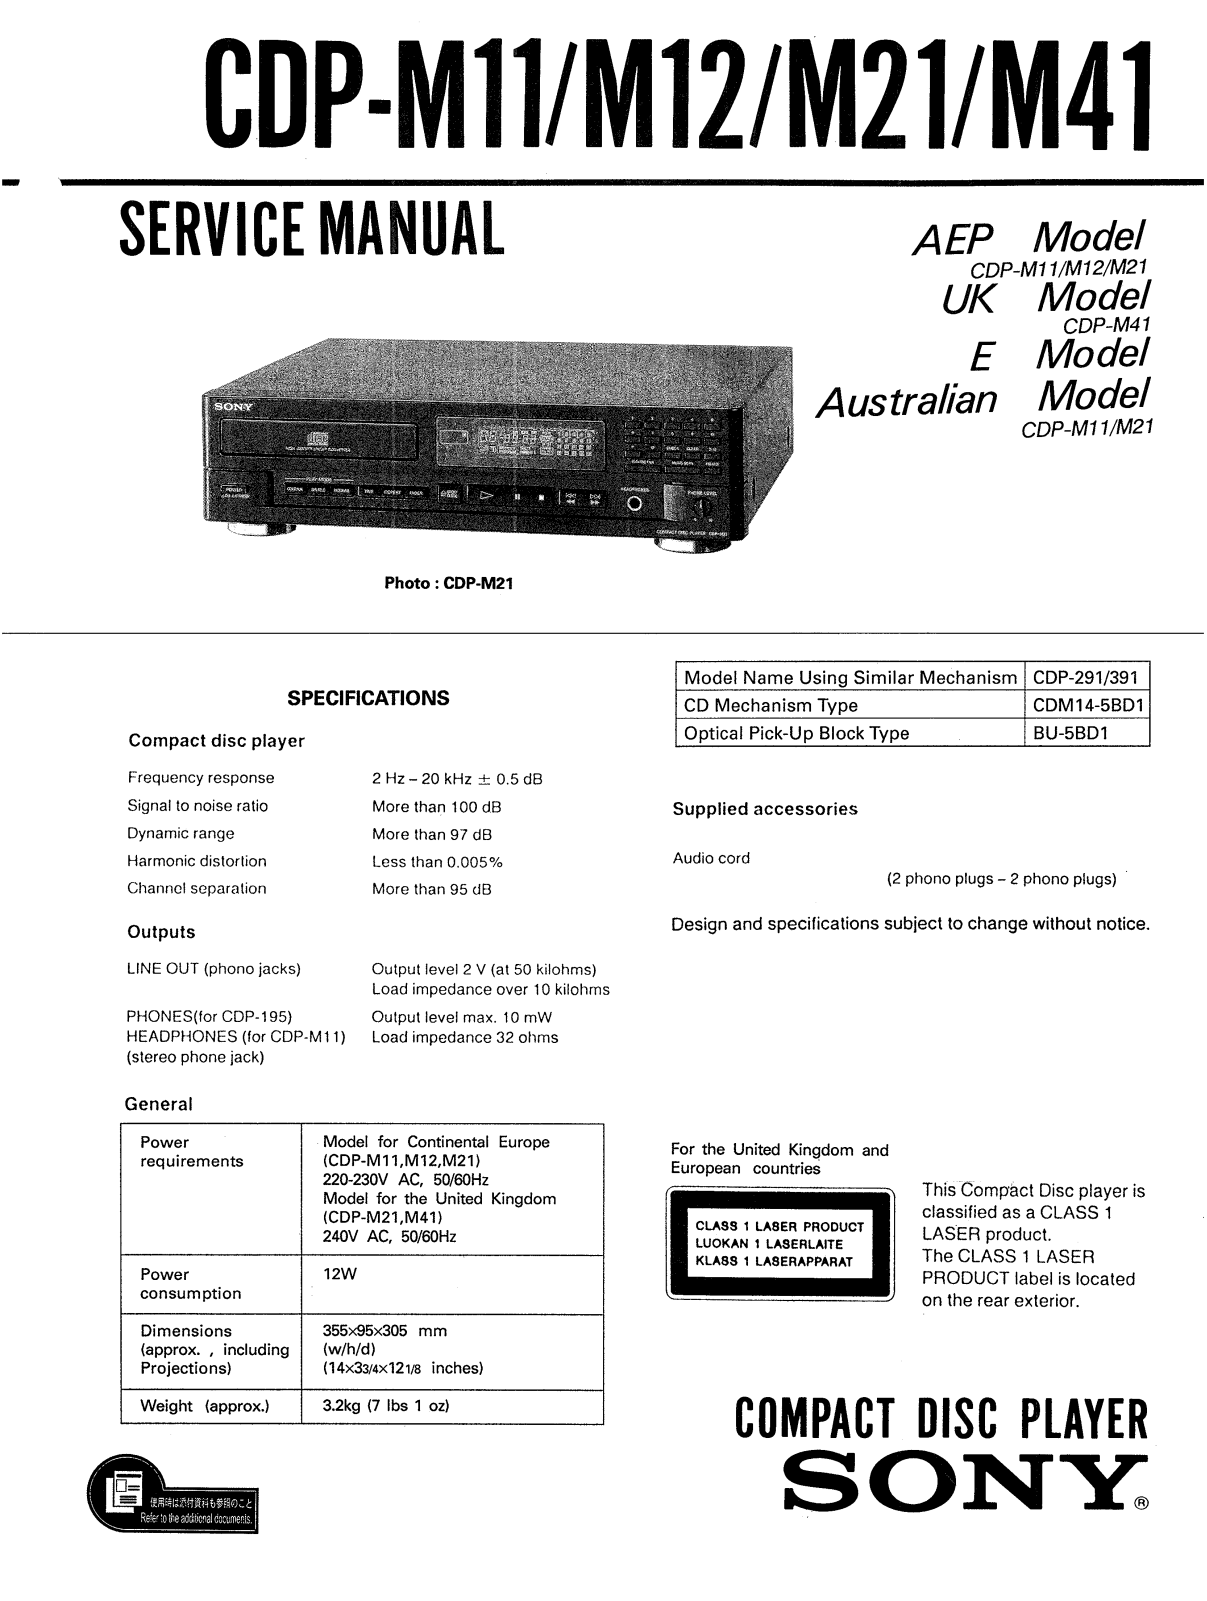 Sony CDPM-11 Service manual